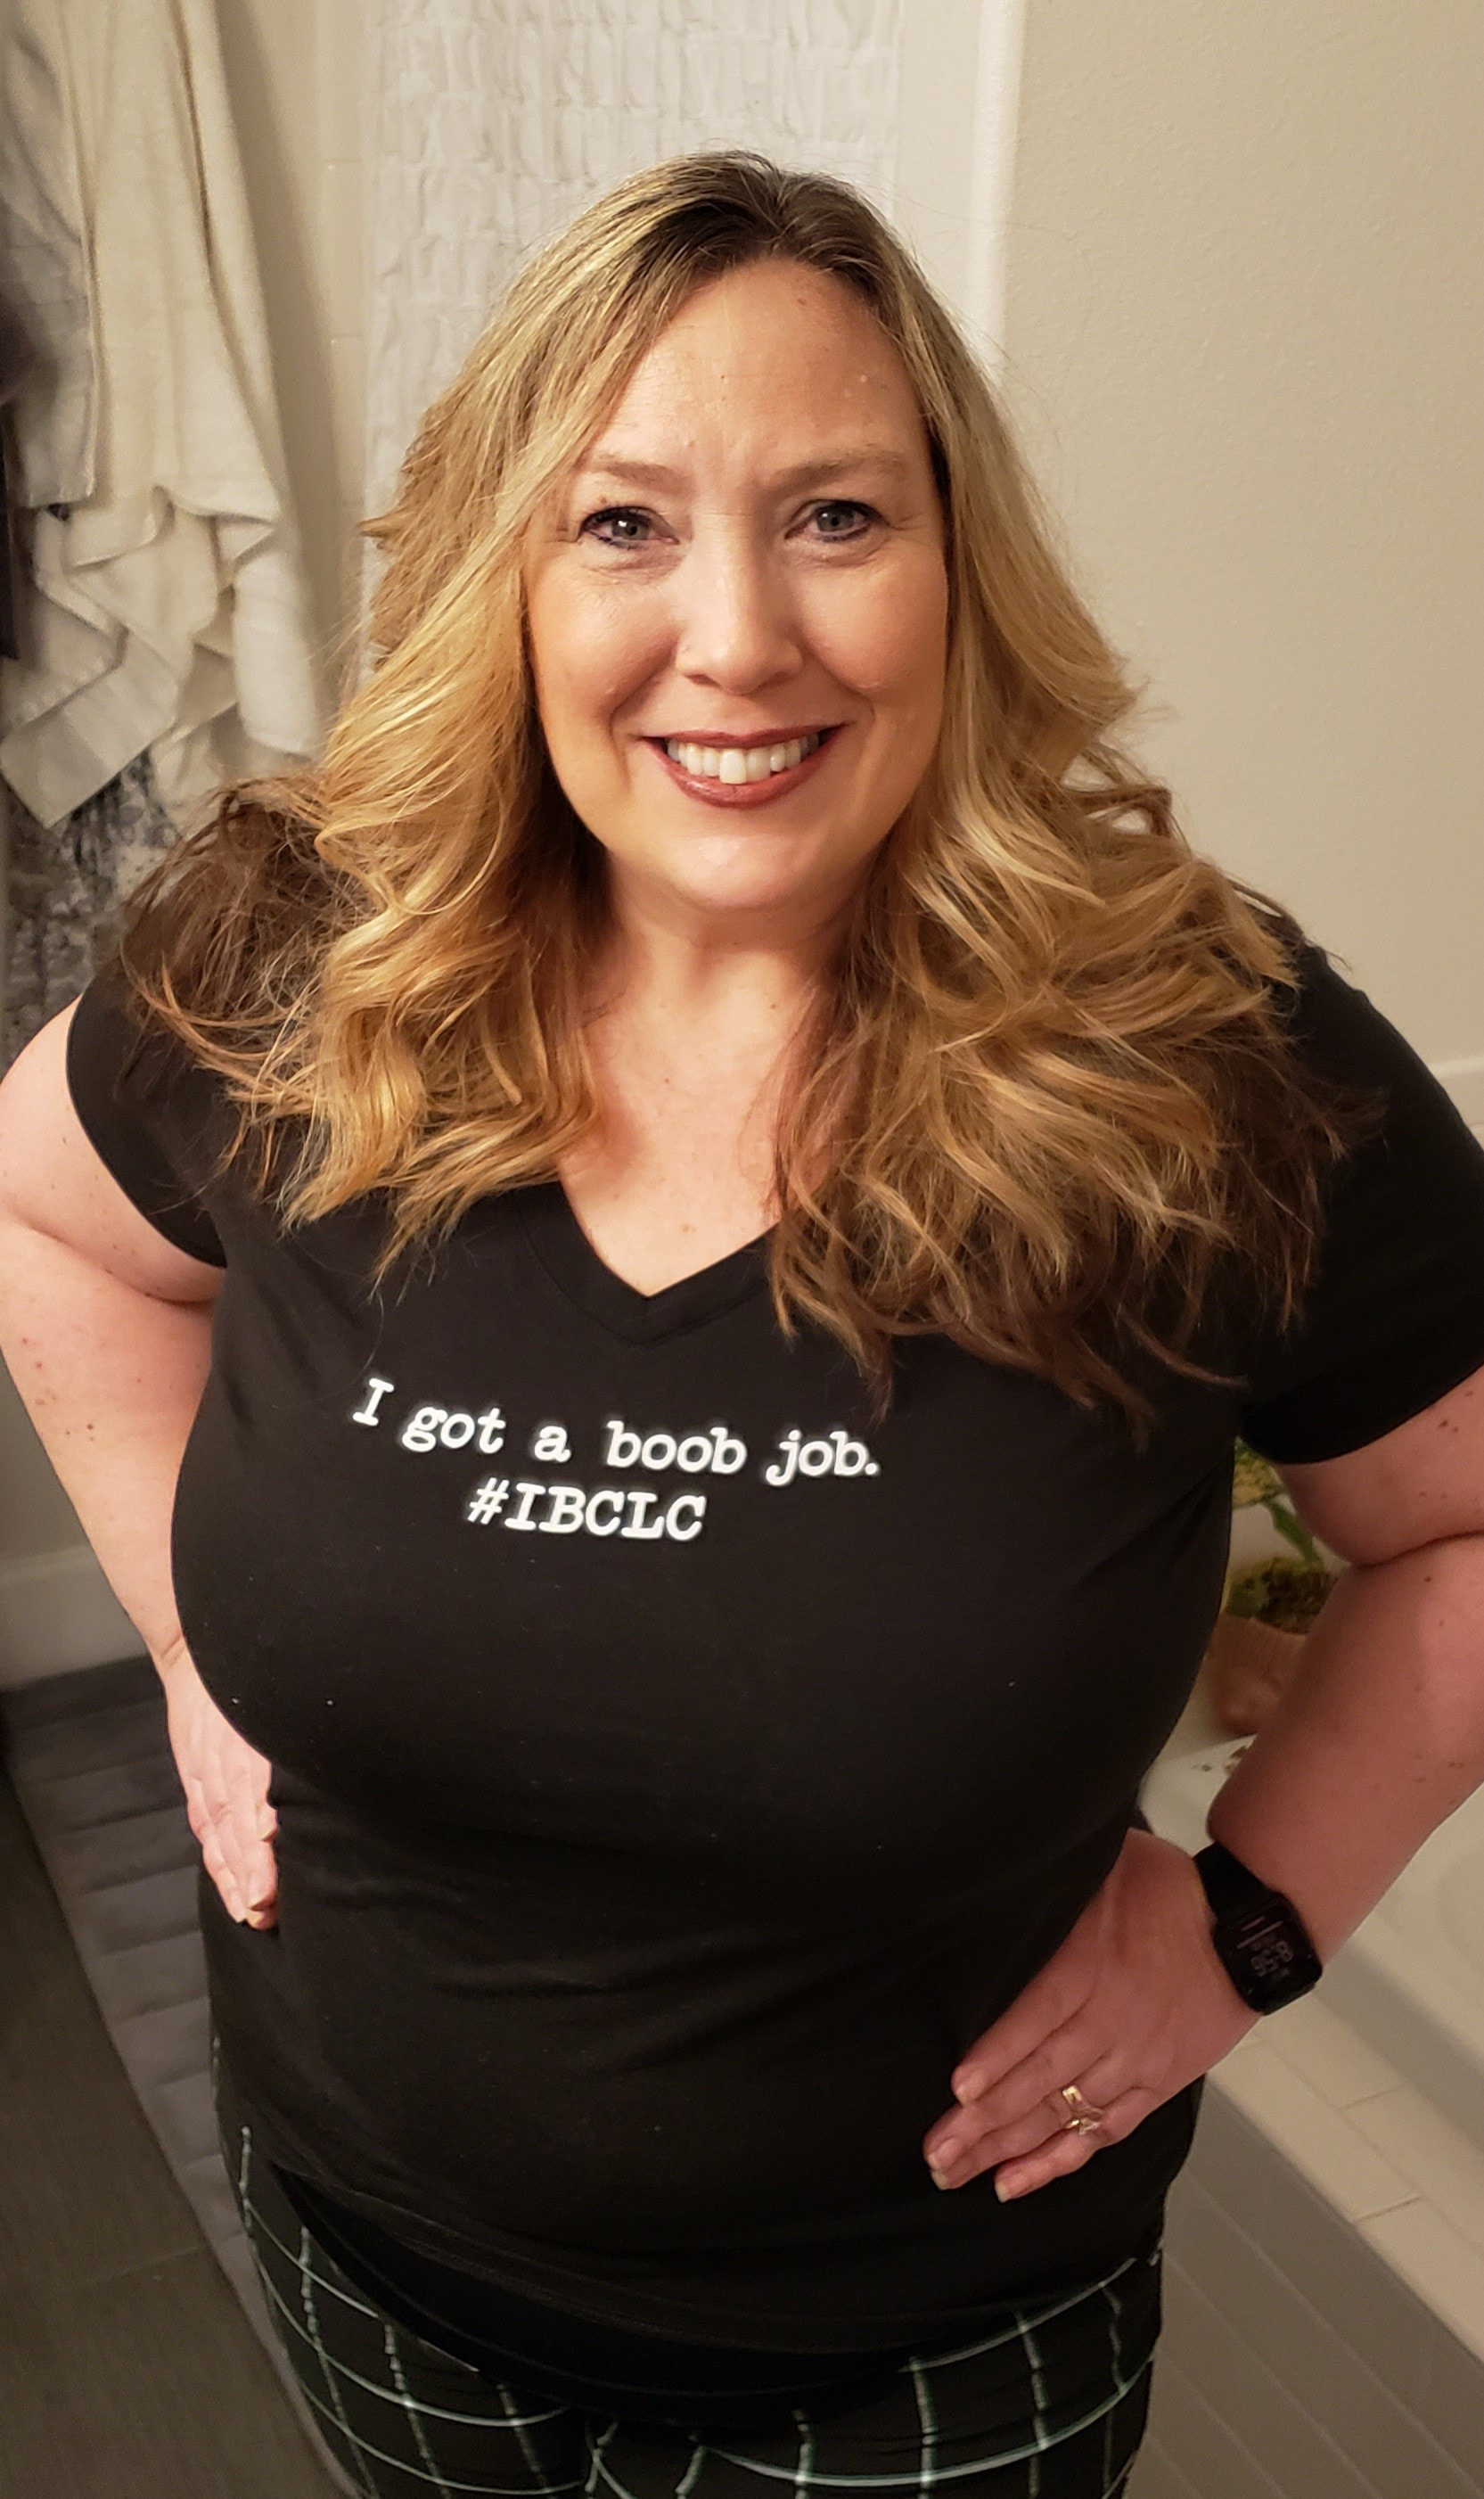 I got a boob job #IBCLC T-shirt